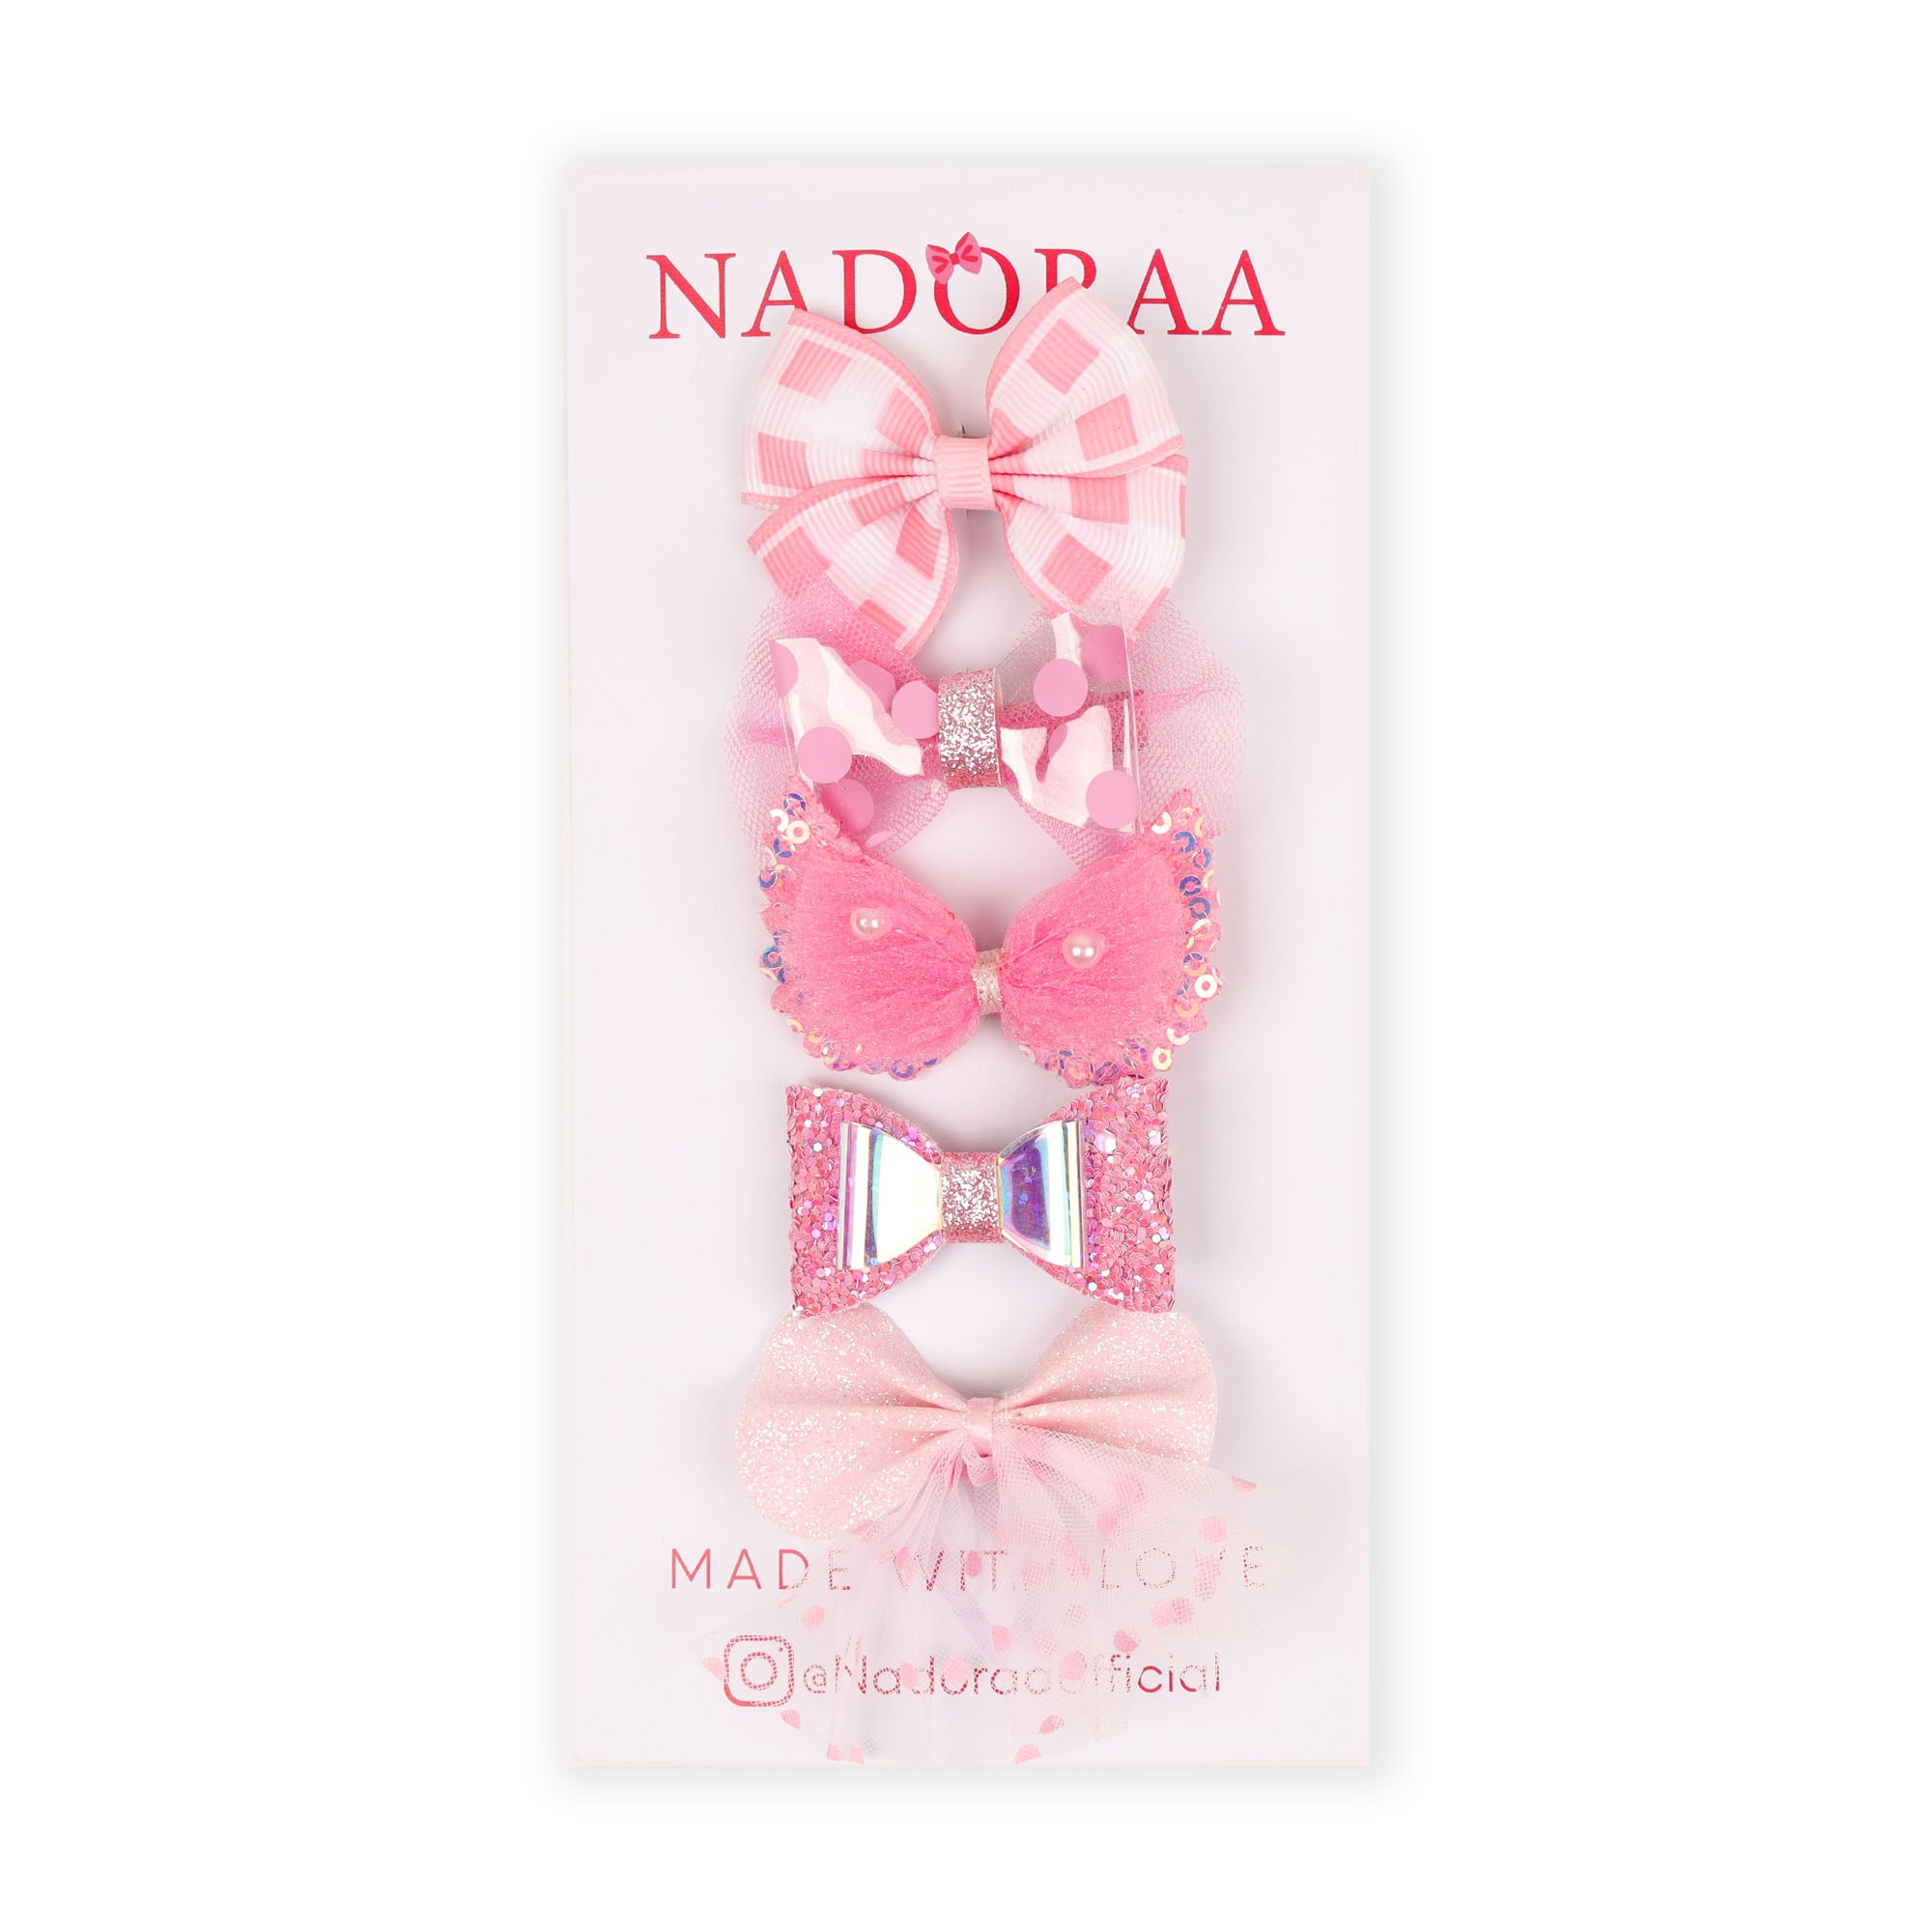 Nadorra Rosy Blush Hairclips- Pack Of 5